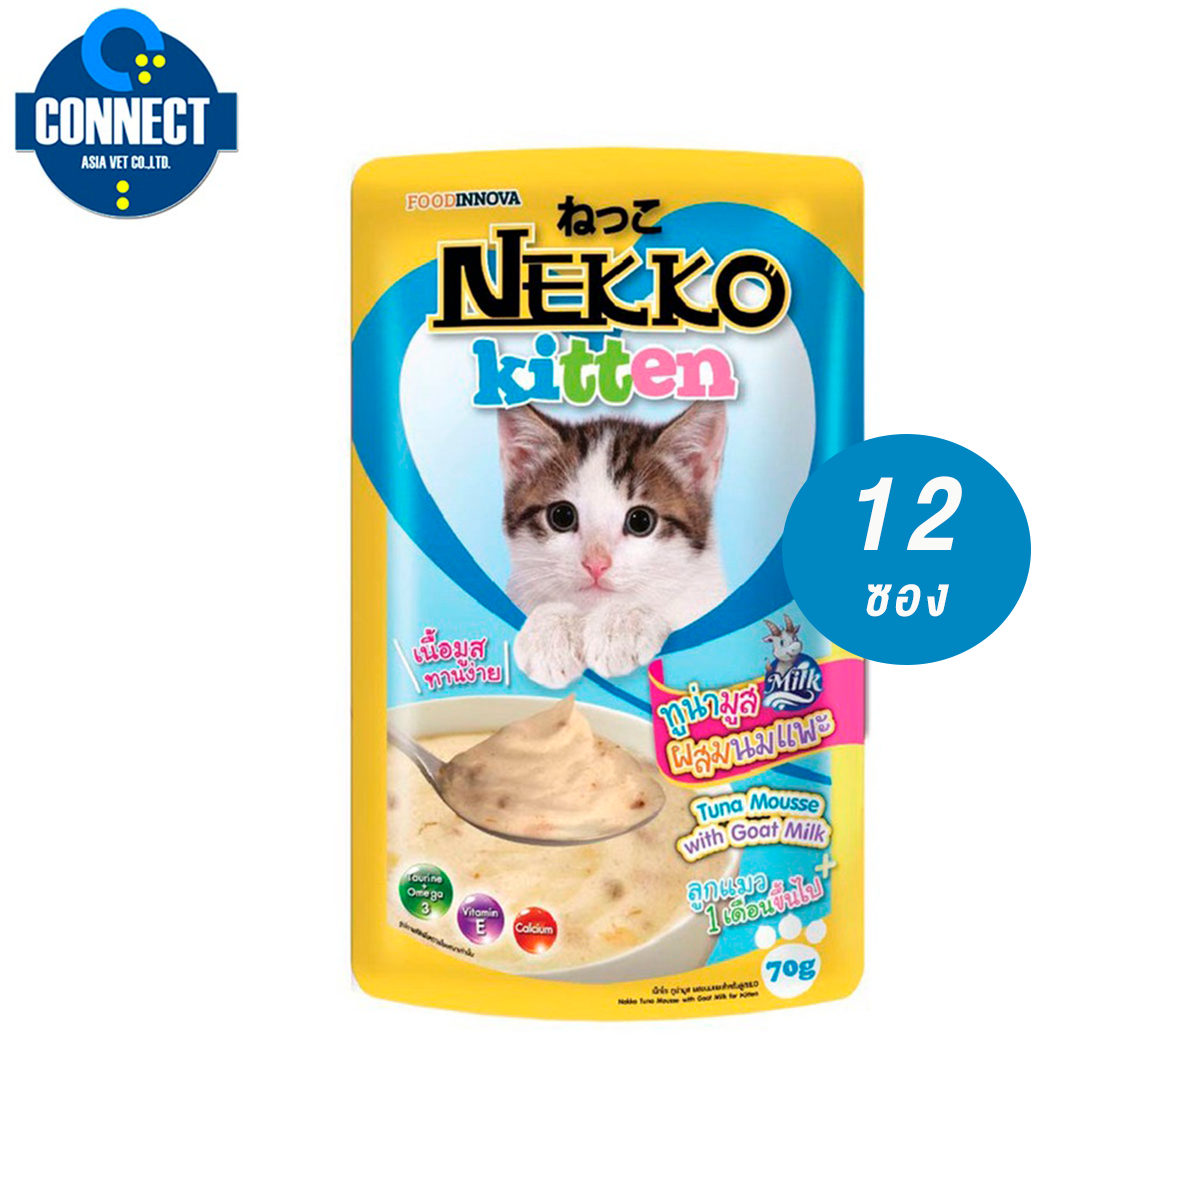 Nekko Kitten อาหารแมวเด็ก ทูน่ามูสผสมนมแพะ 70g. (สีฟ้า) จำนวน 1 ซอง.